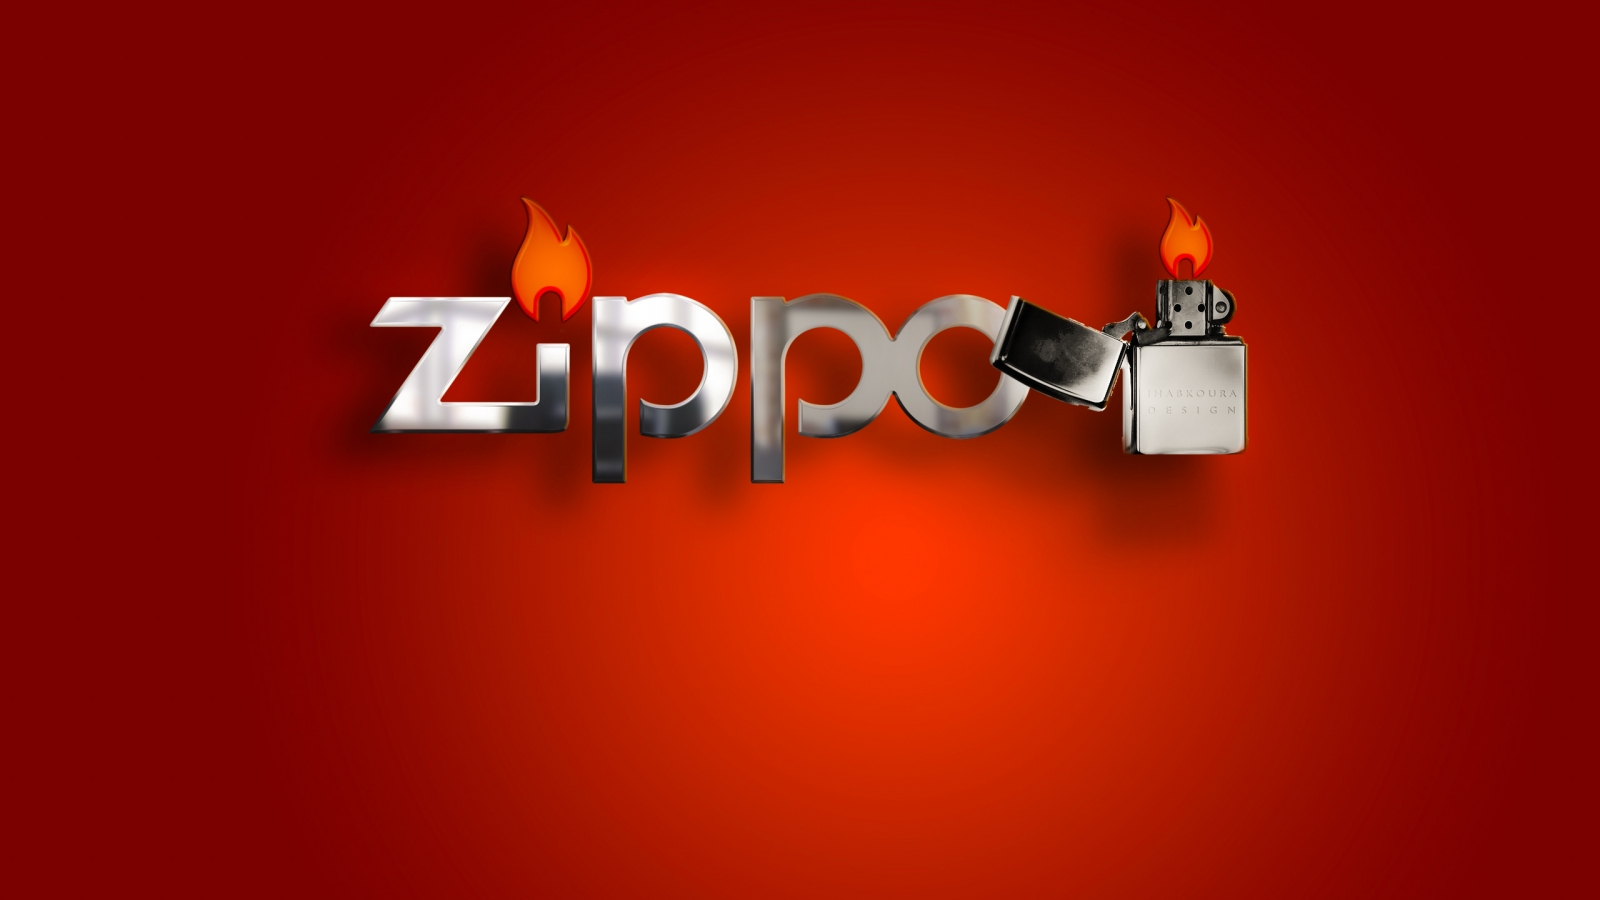 Zippo Lighter for 1600 x 900 HDTV resolution